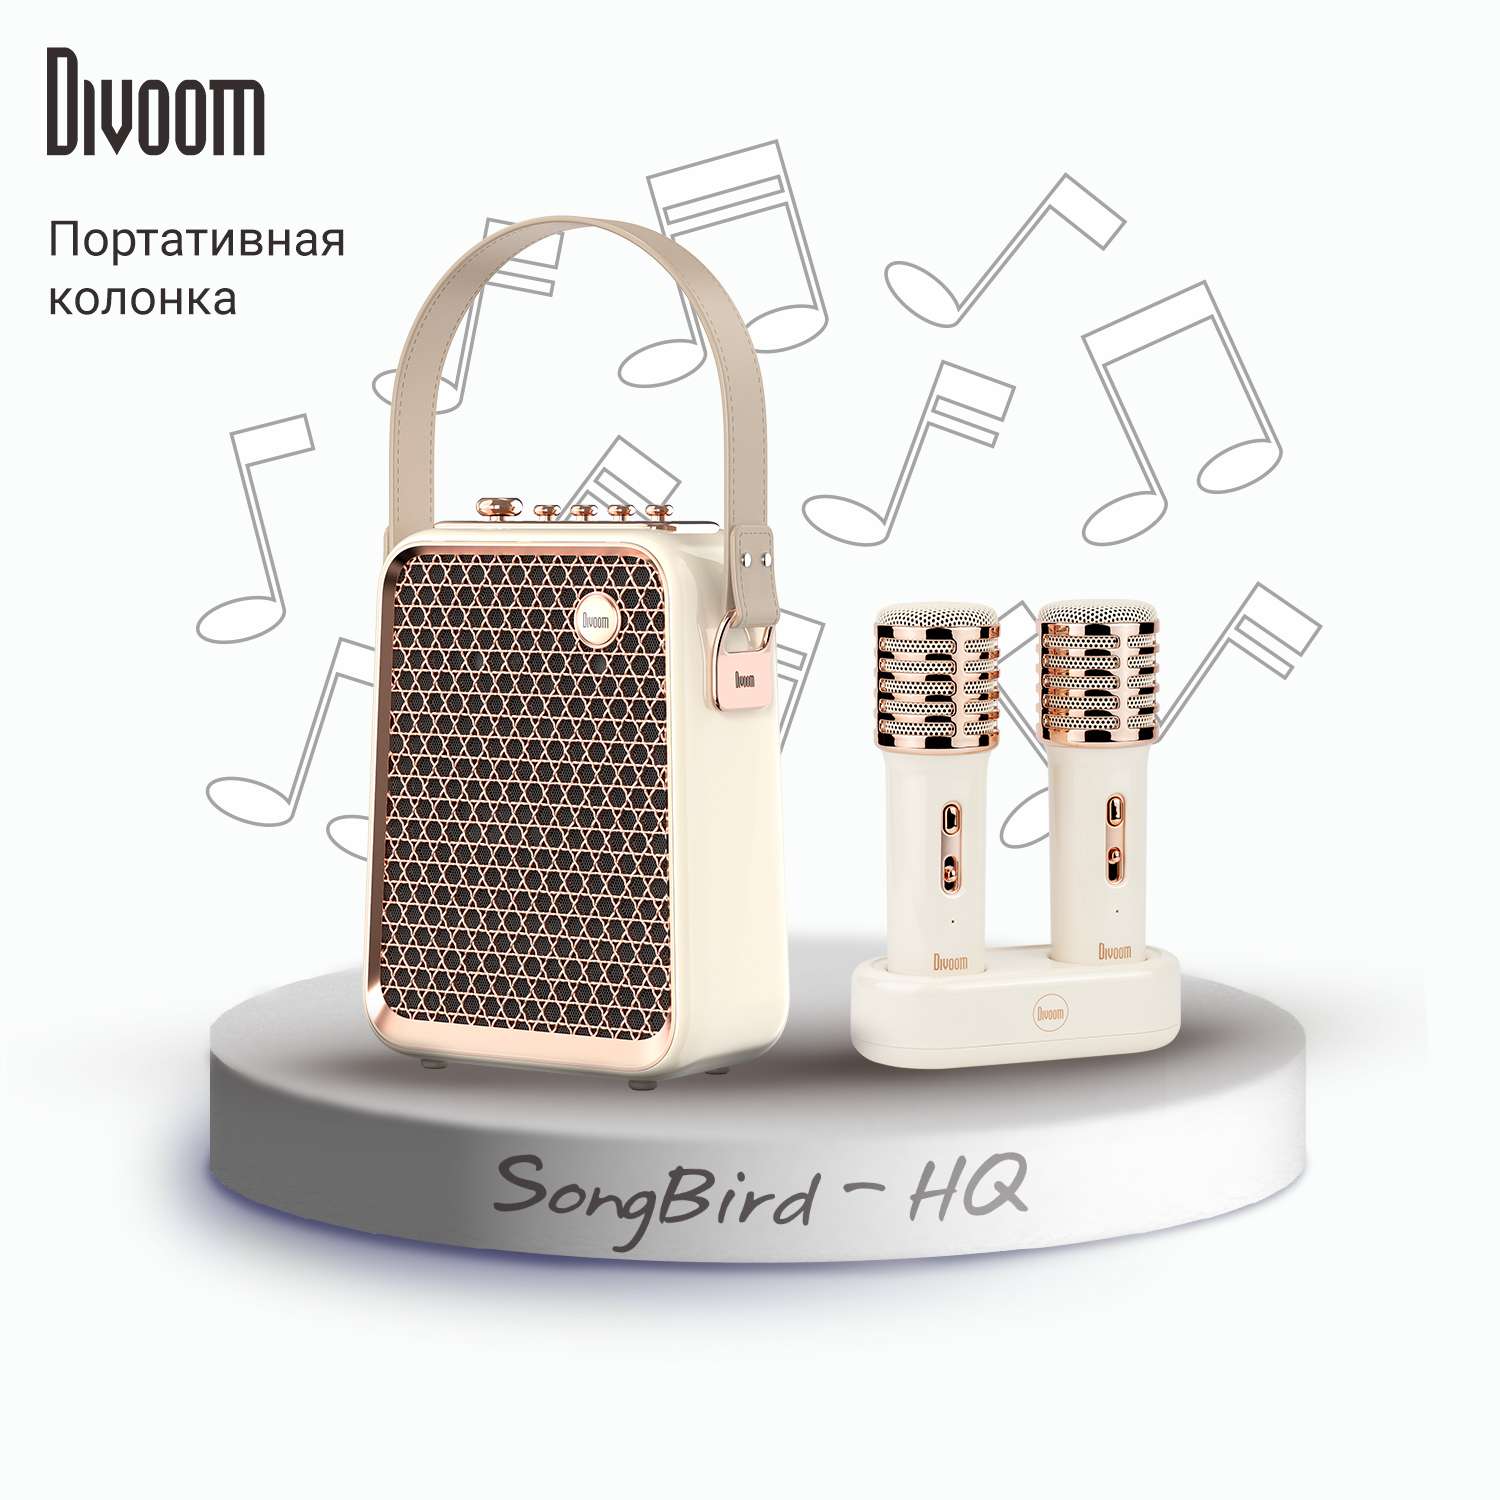 Беспроводная колонка DIVOOM портативная с двумя микрофонами SongBird-HQ белая - фото 1